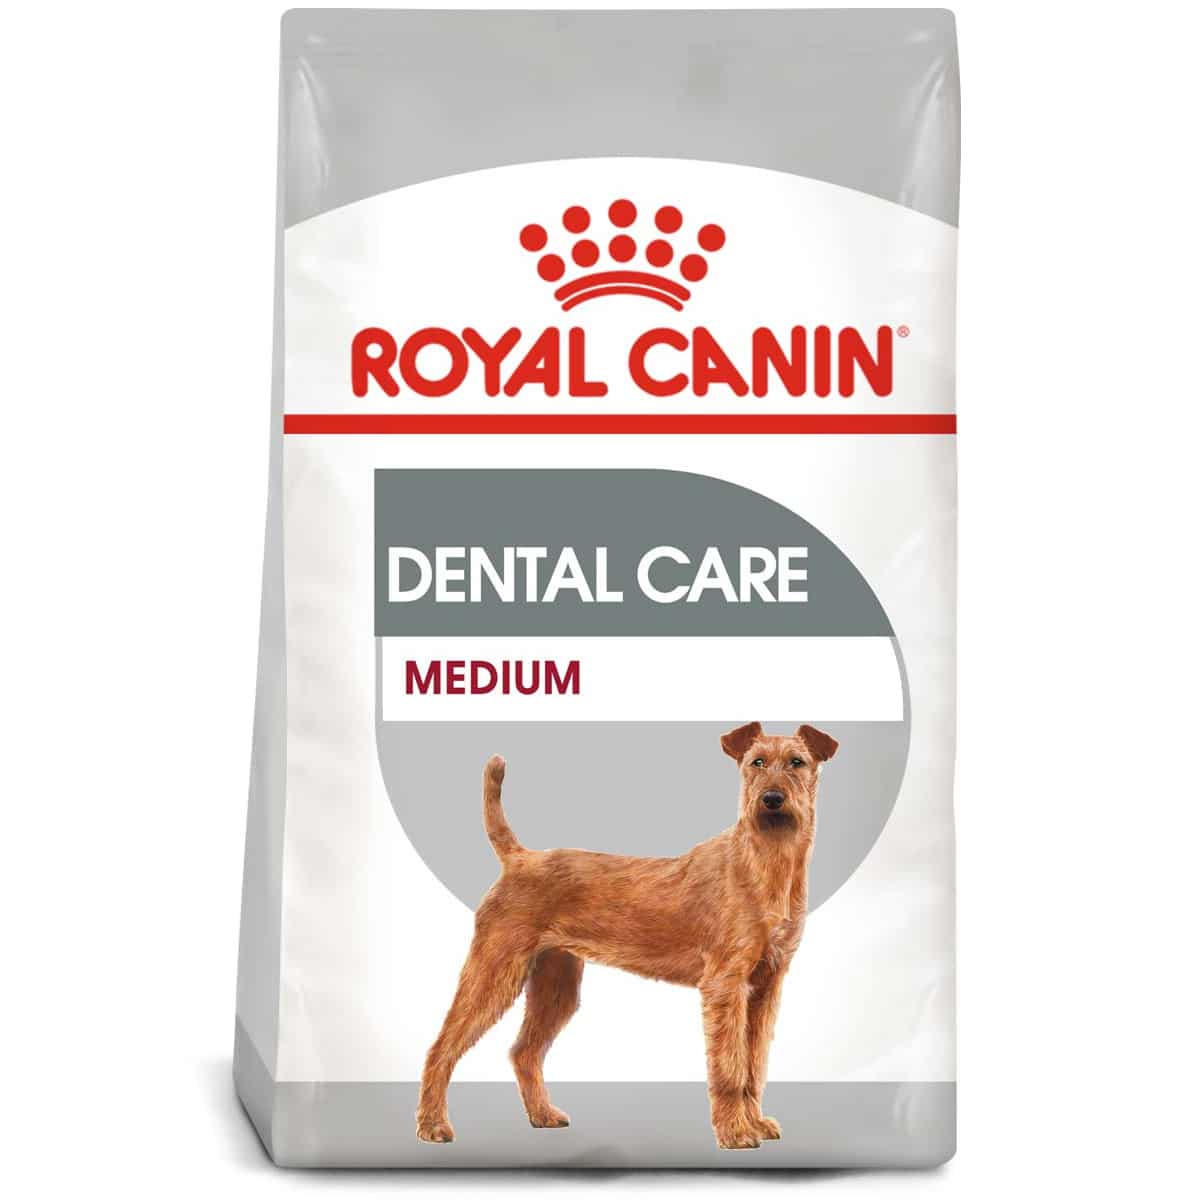 ROYAL CANIN DENTAL CARE MEDIUM Trockenfutter für mittelgroße Hunde mit empfindlichen Zähnen 2x10kg